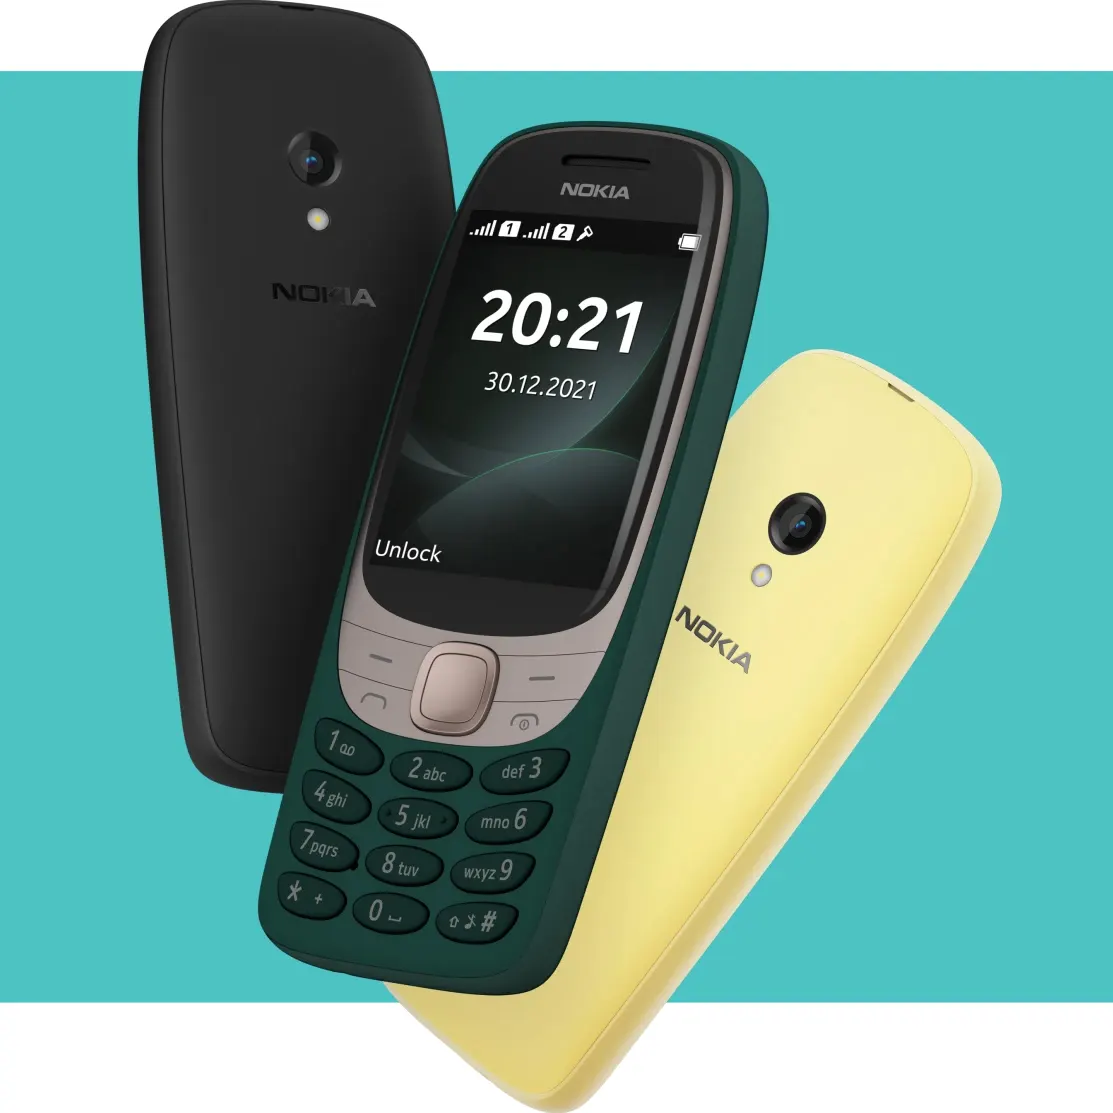 Nokia 6310 được hồi
sinh với thiết kế mới, giá 1.1 triệu đồng